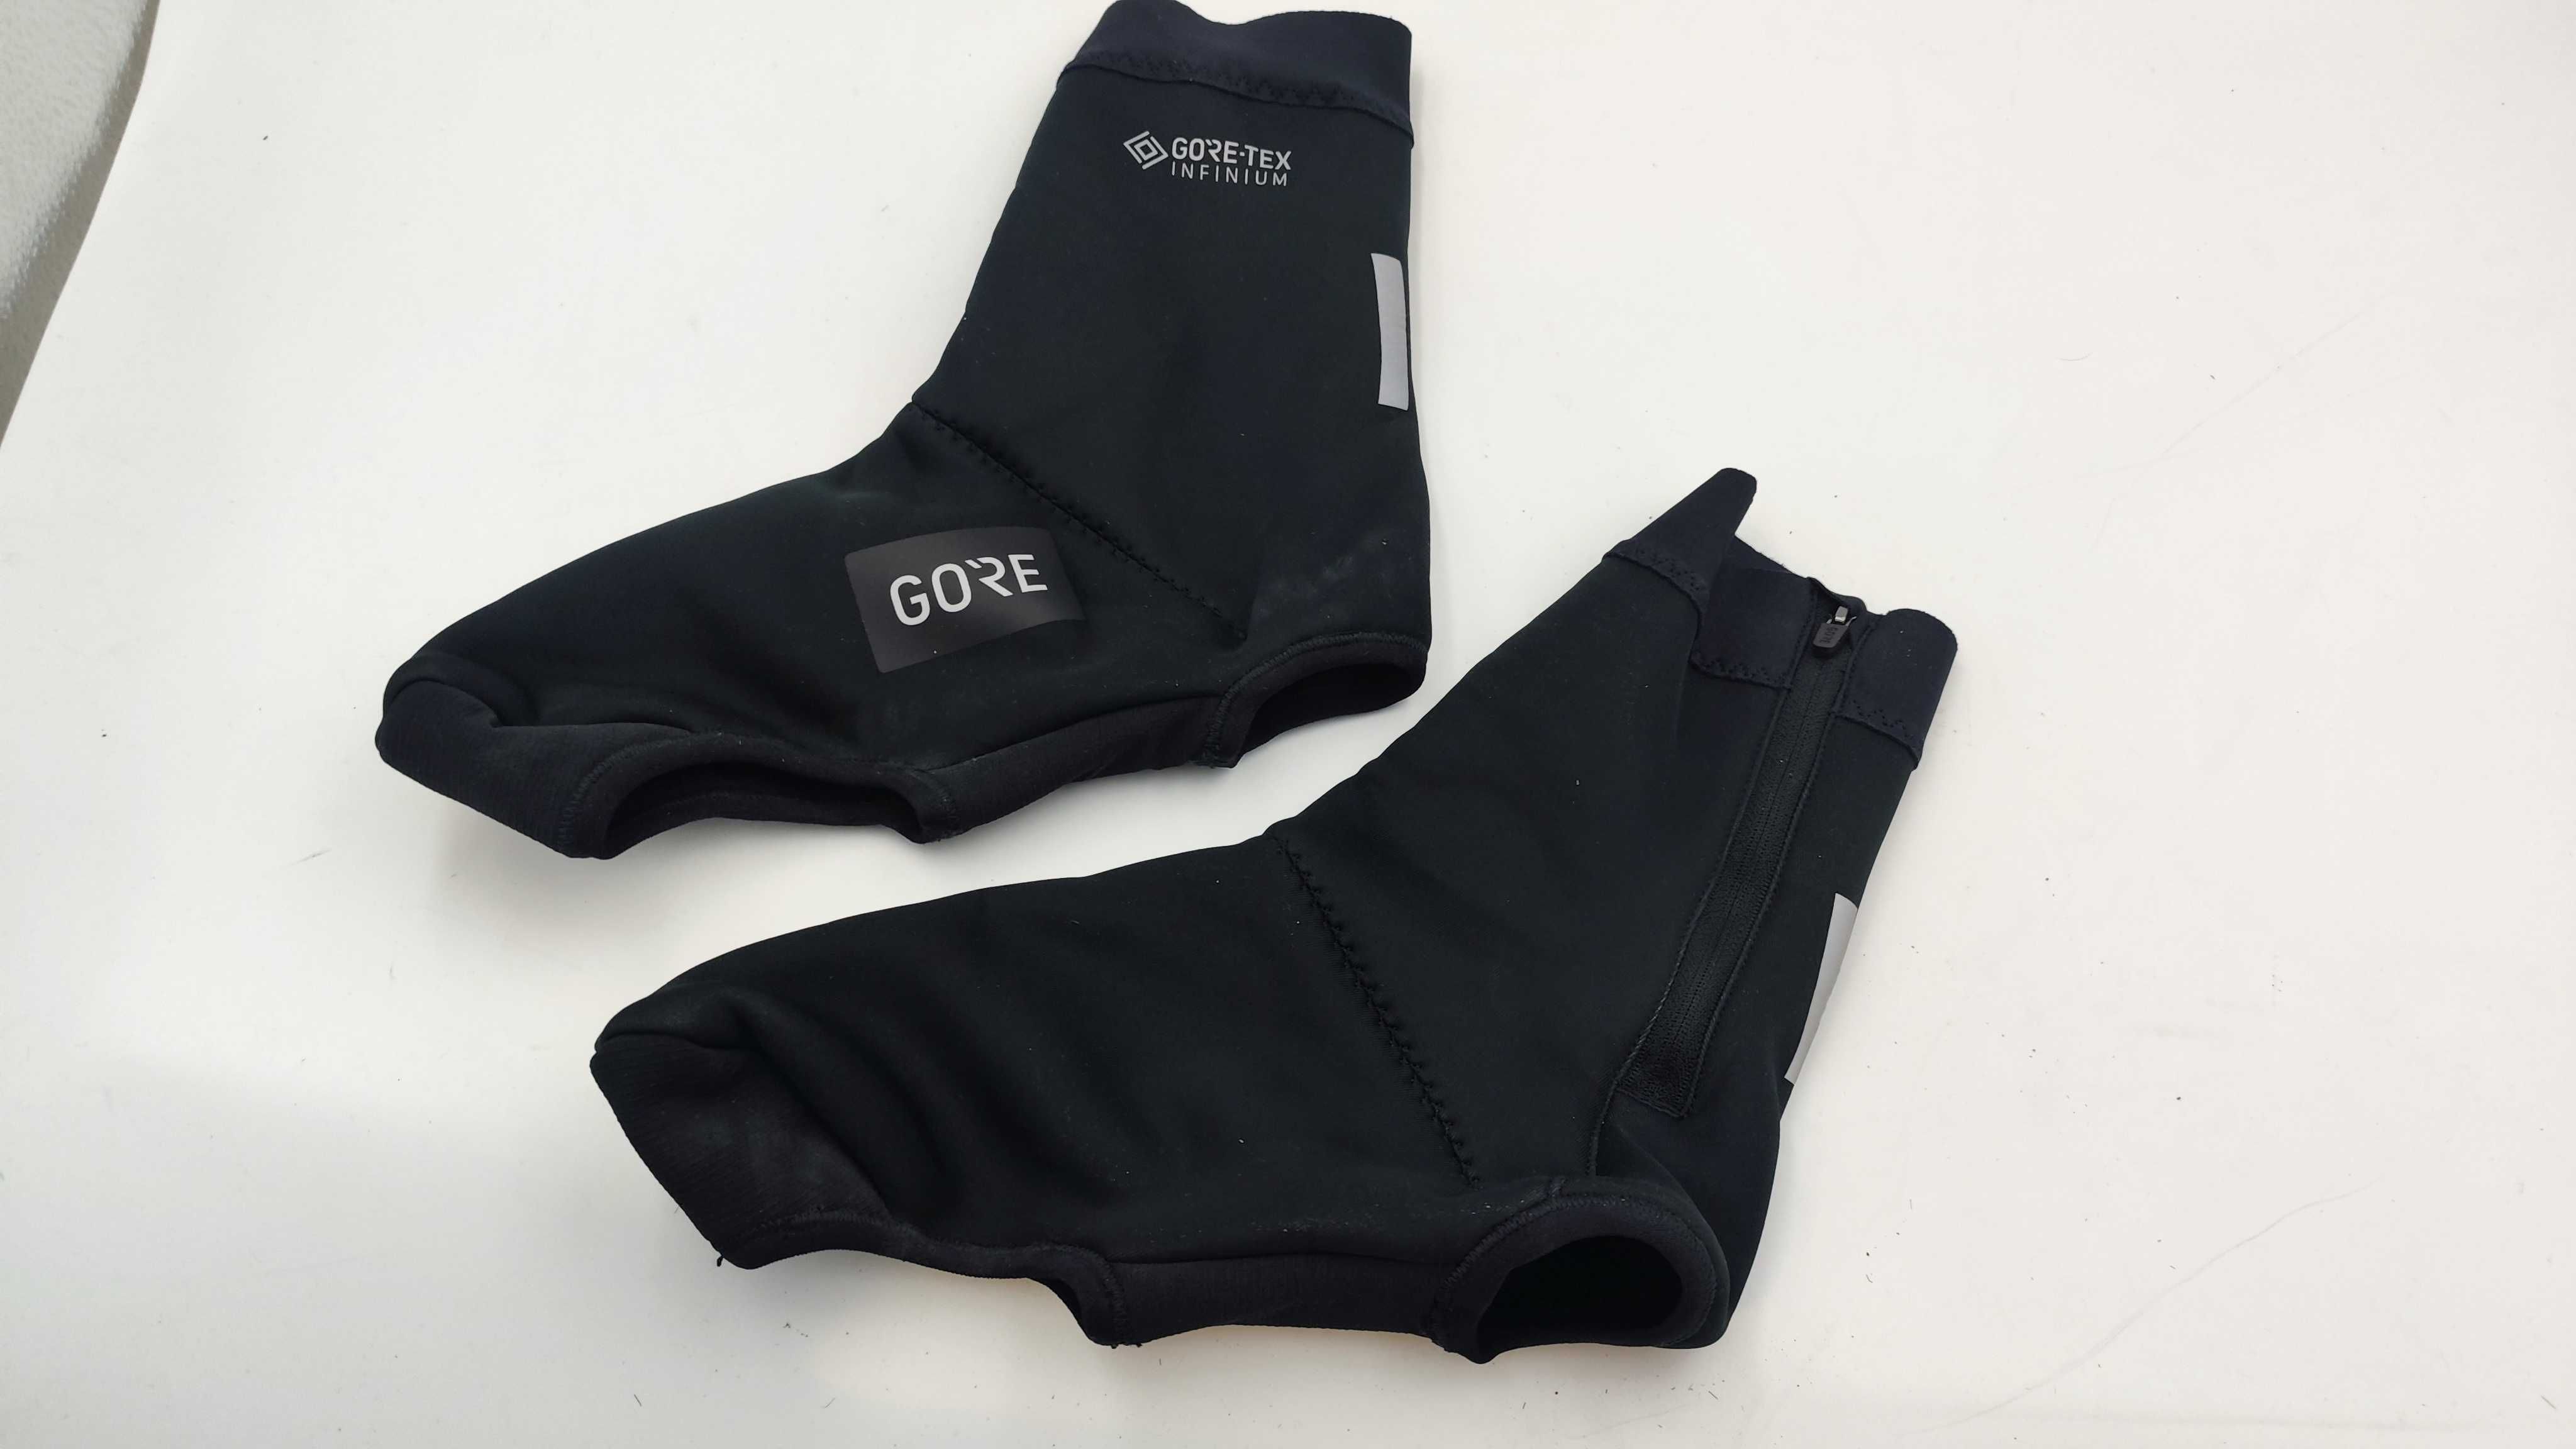 Ochraniacze na buty rowerowe termiczne GORE-TEX INFINIUM 44-45 (AO26)